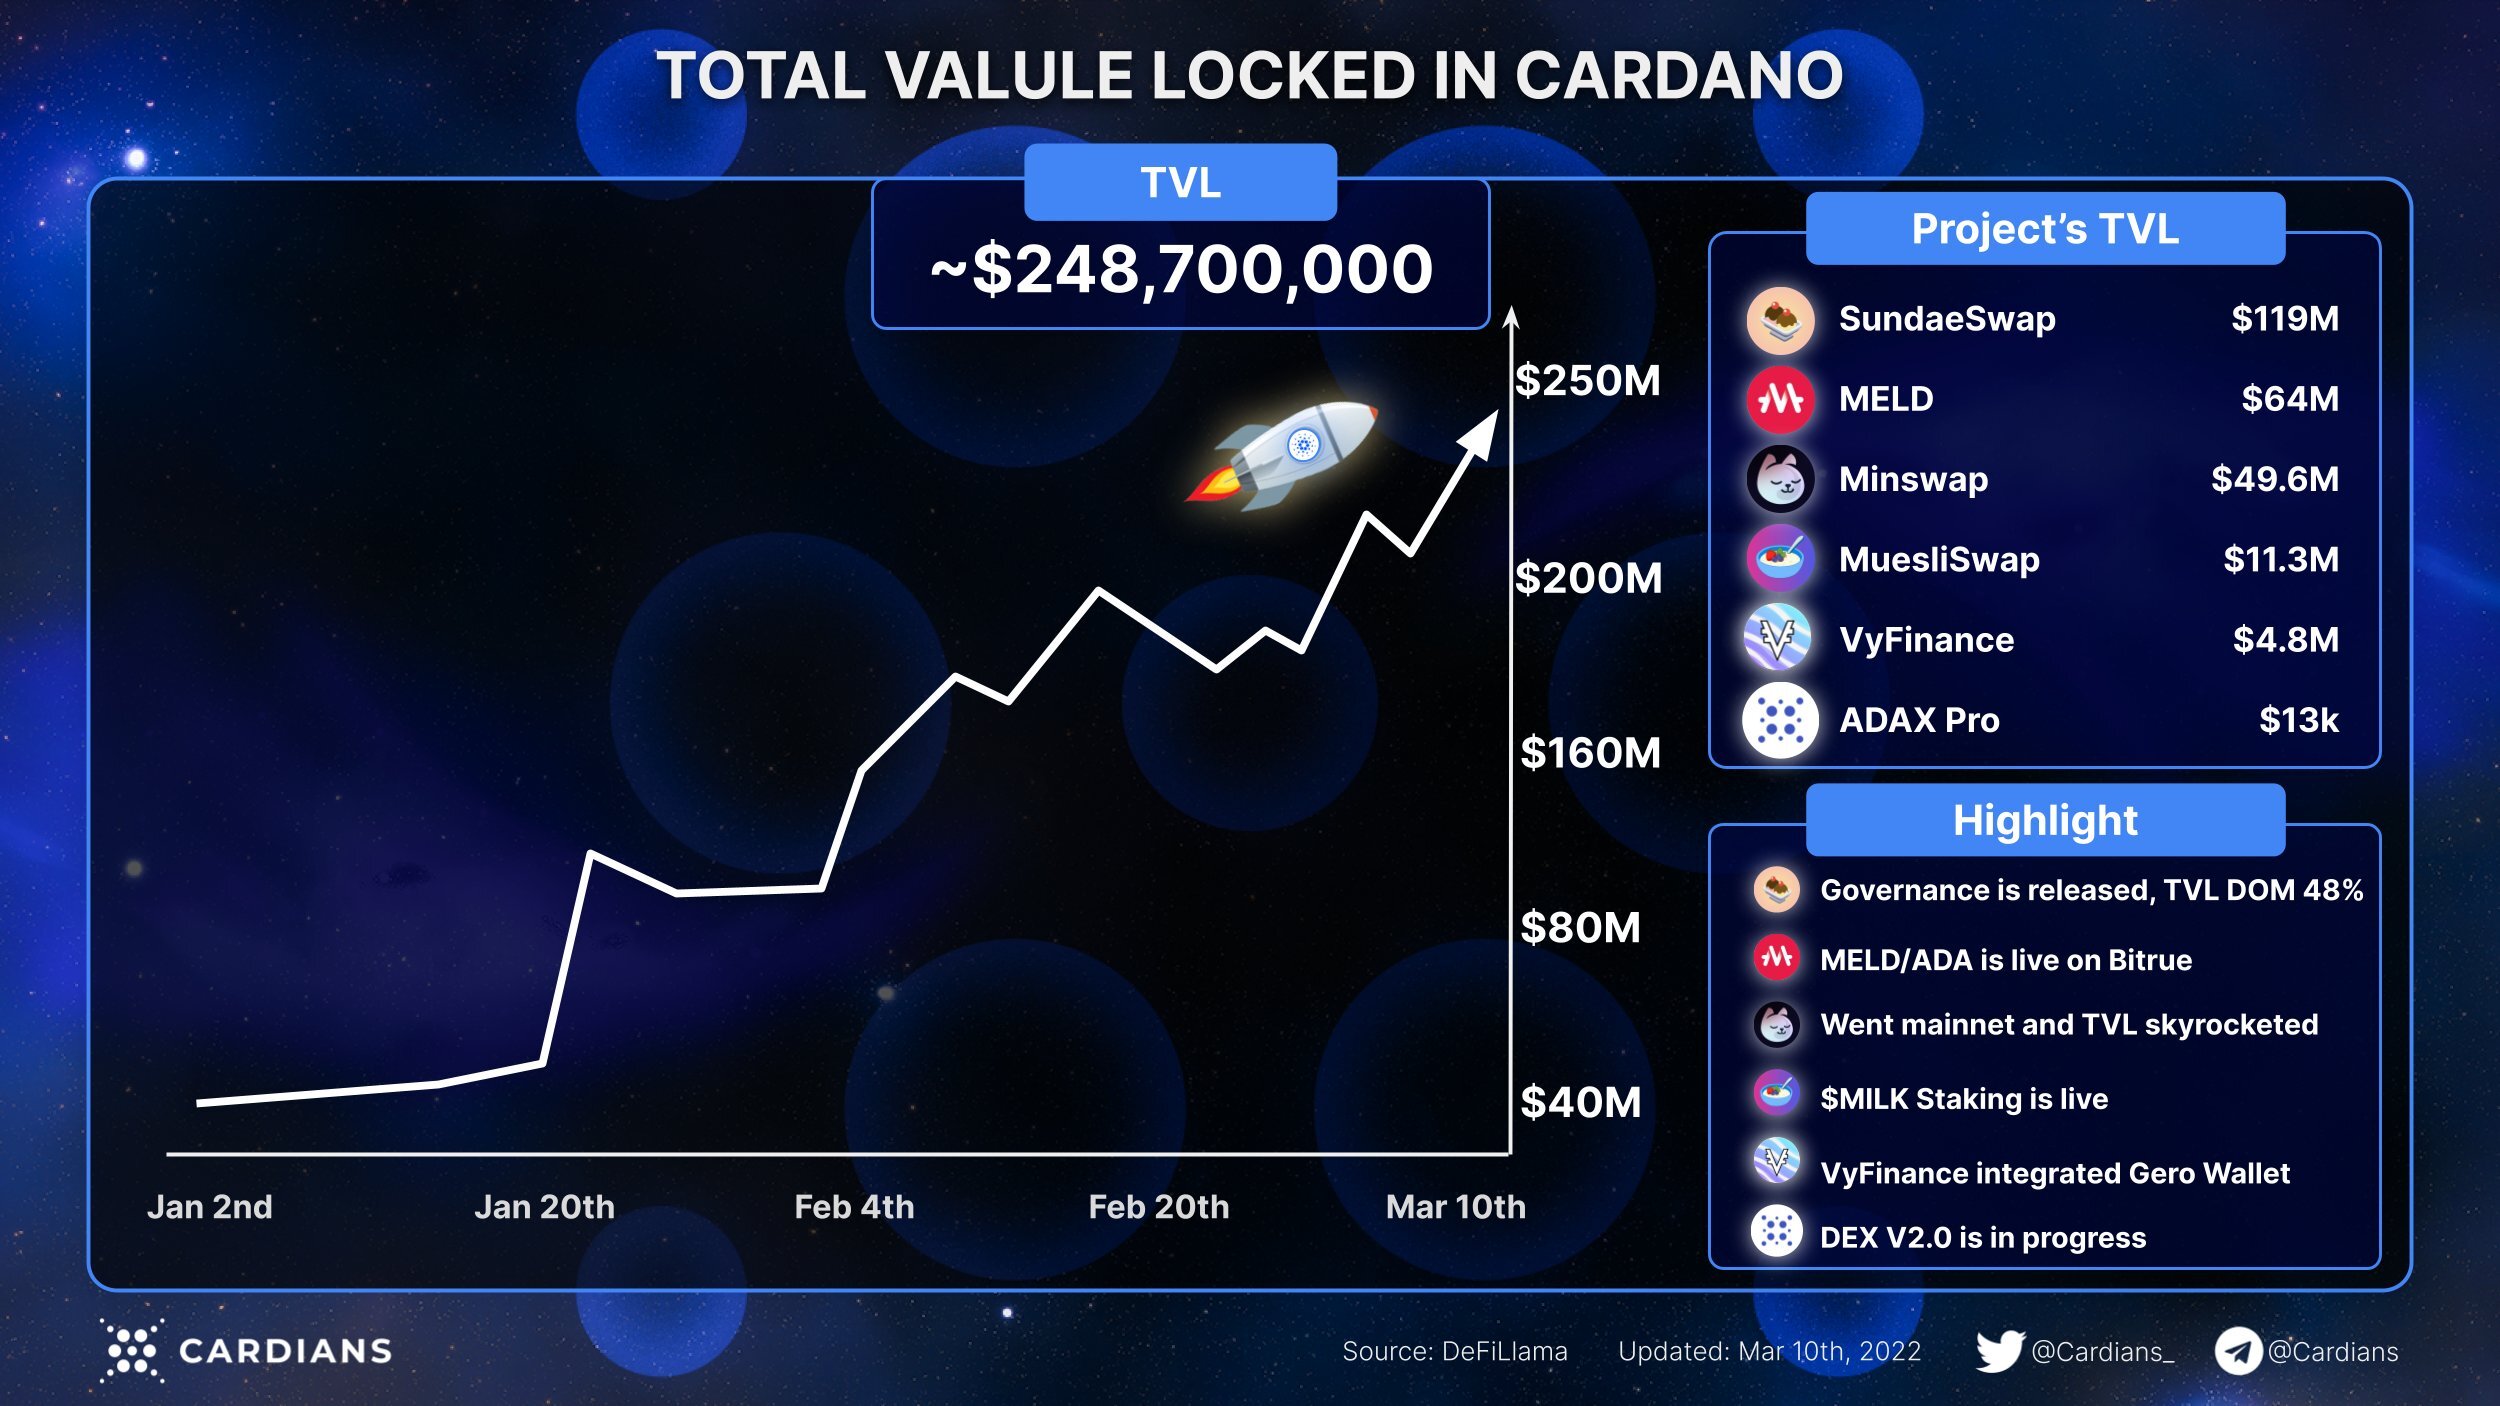 Tổng giá trị khóa của Cardano (TVL) vẫn còn hơn -200 triệu